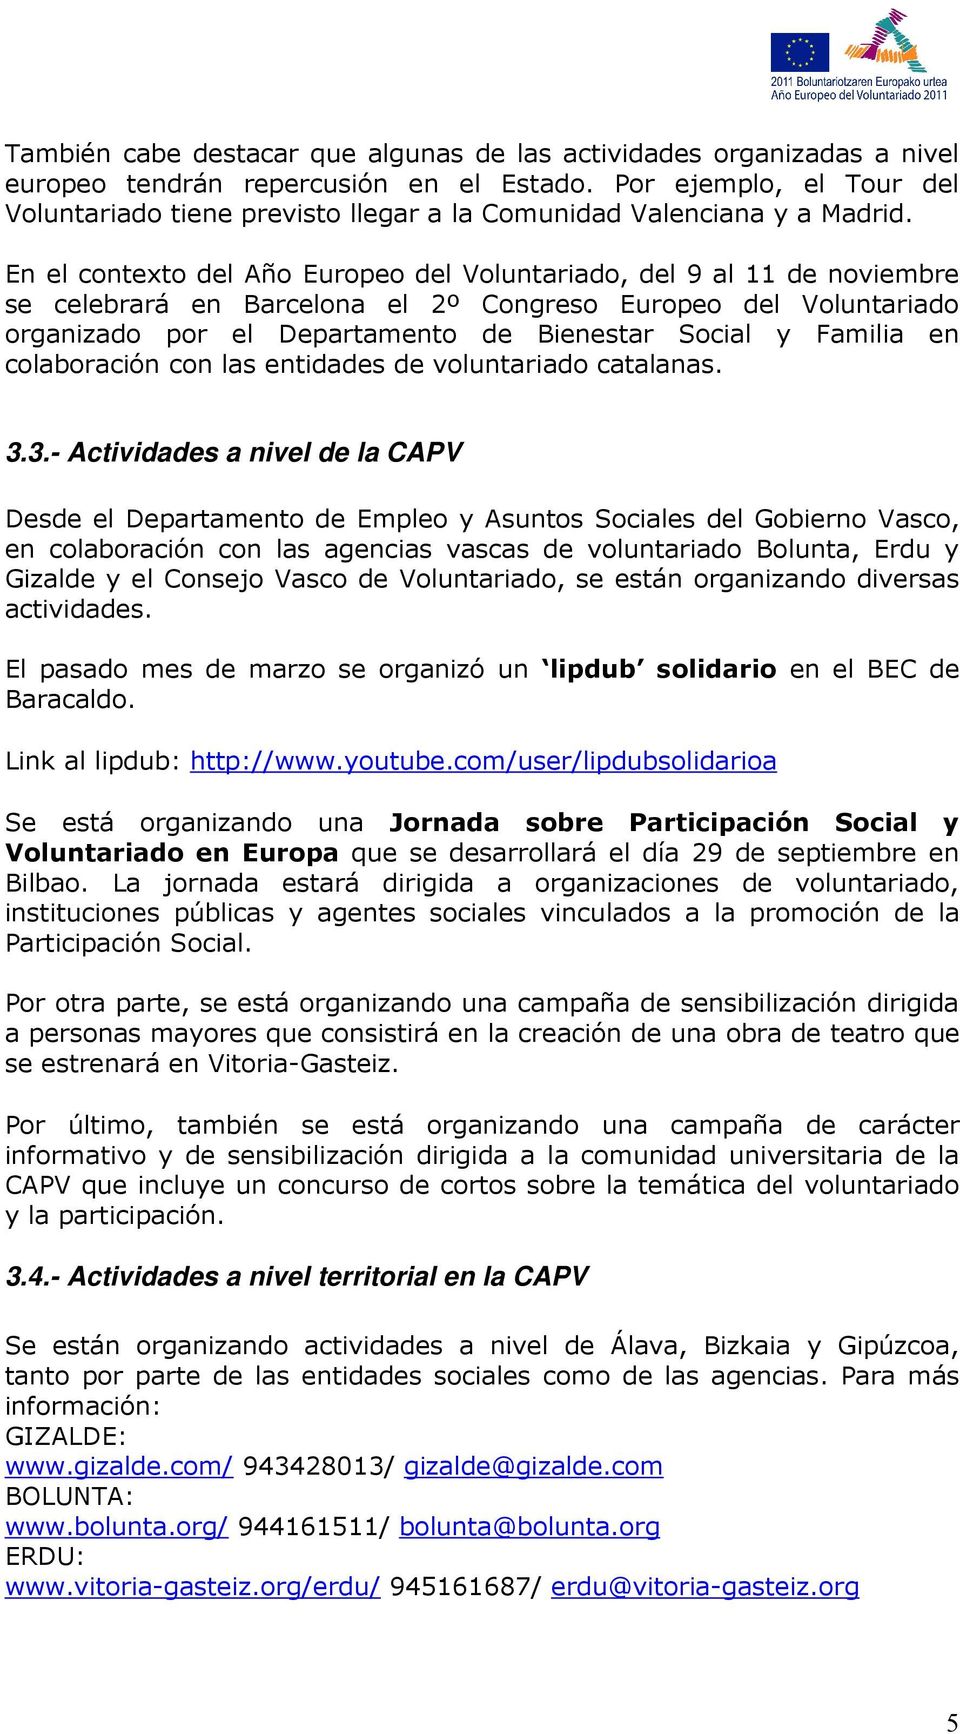 En el contexto del Año Europeo del Voluntariado, del 9 al 11 de noviembre se celebrará en Barcelona el 2º Congreso Europeo del Voluntariado organizado por el Departamento de Bienestar Social y